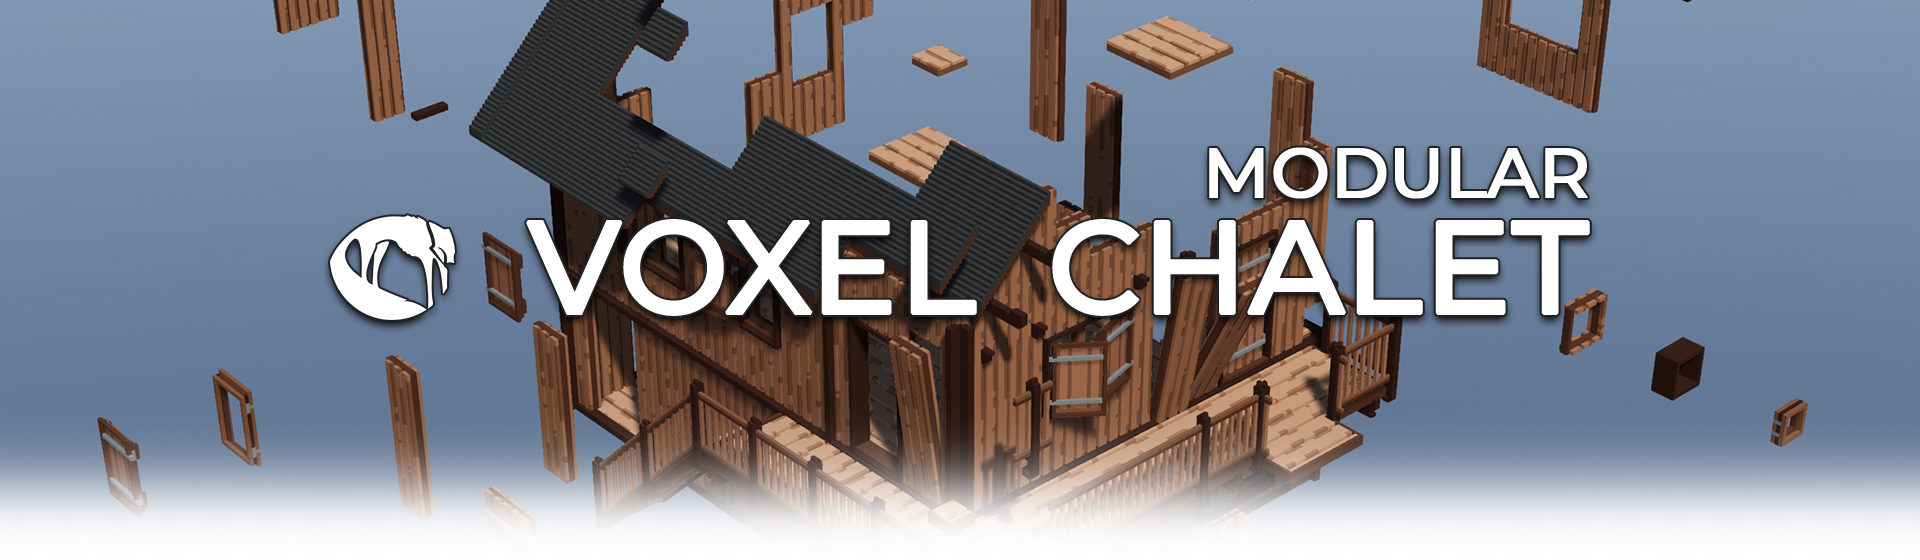 Voxel - Modular Chalet